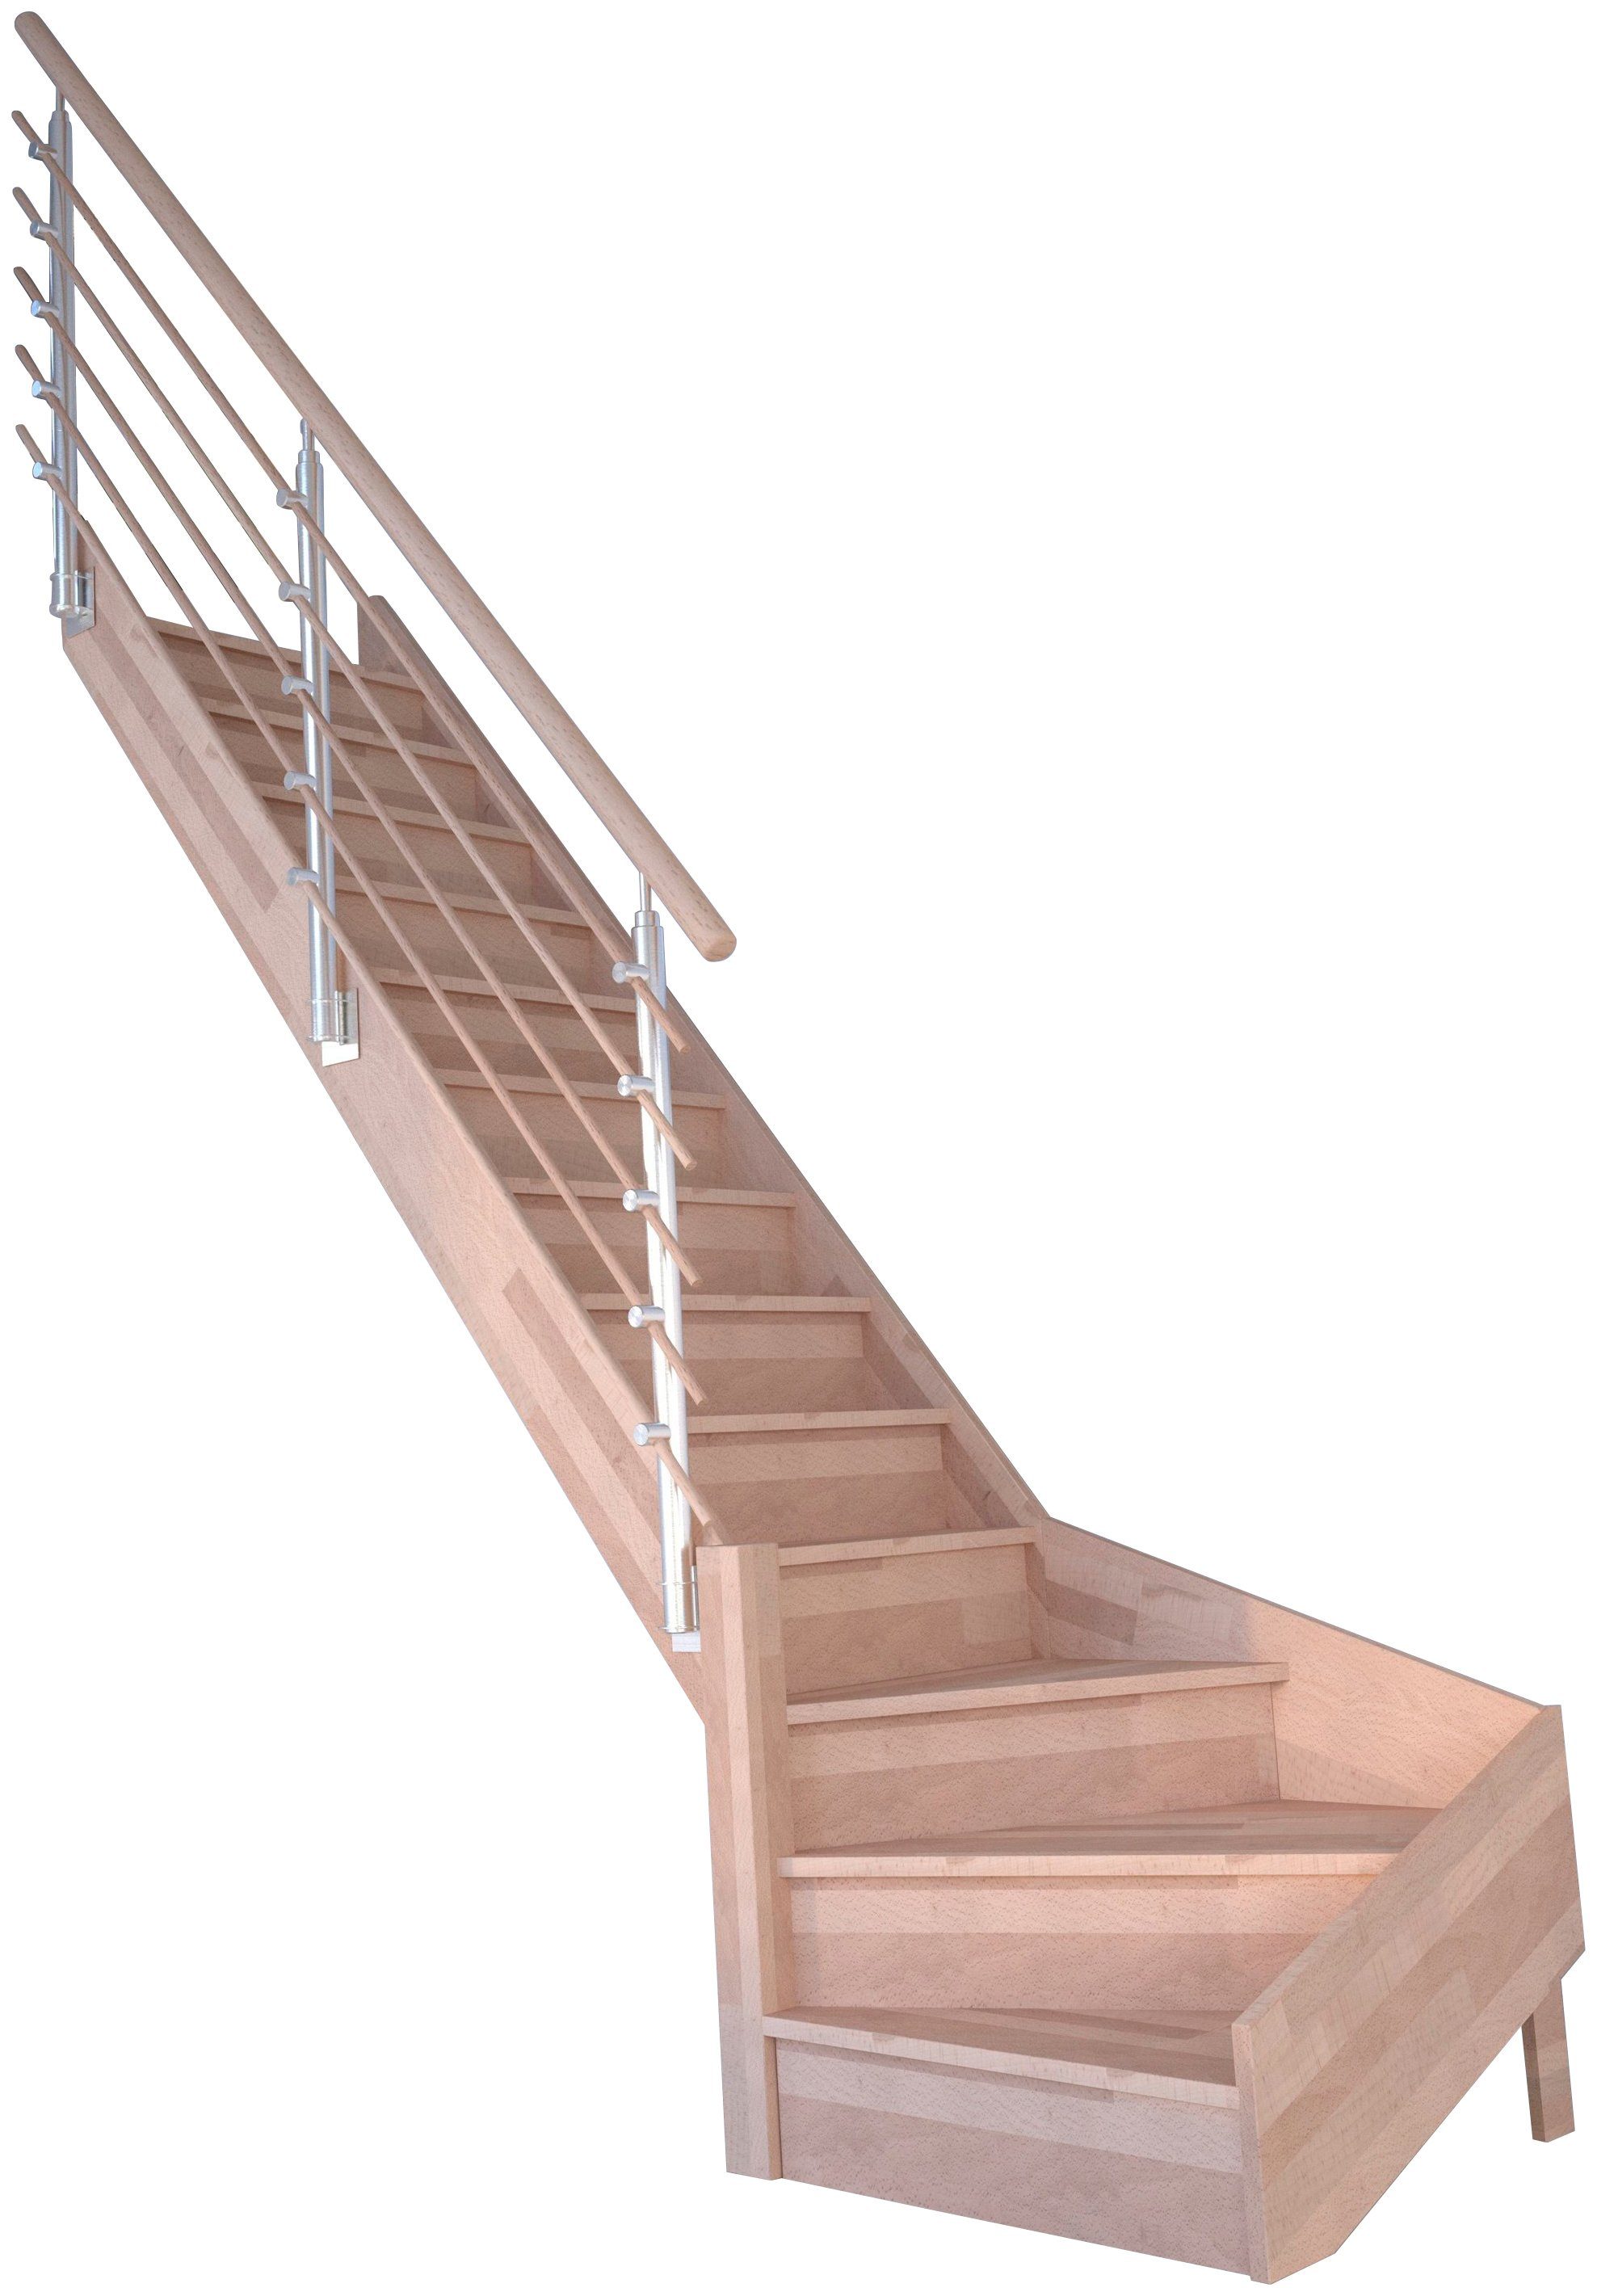 cm, Geschosshöhen bis geschlossen, Links, 300 Massivholz Stufen Wangenteile Starwood Holzrundstäbe, für Durchgehende Design-Geländer Rhodos, gewendelt Raumspartreppe